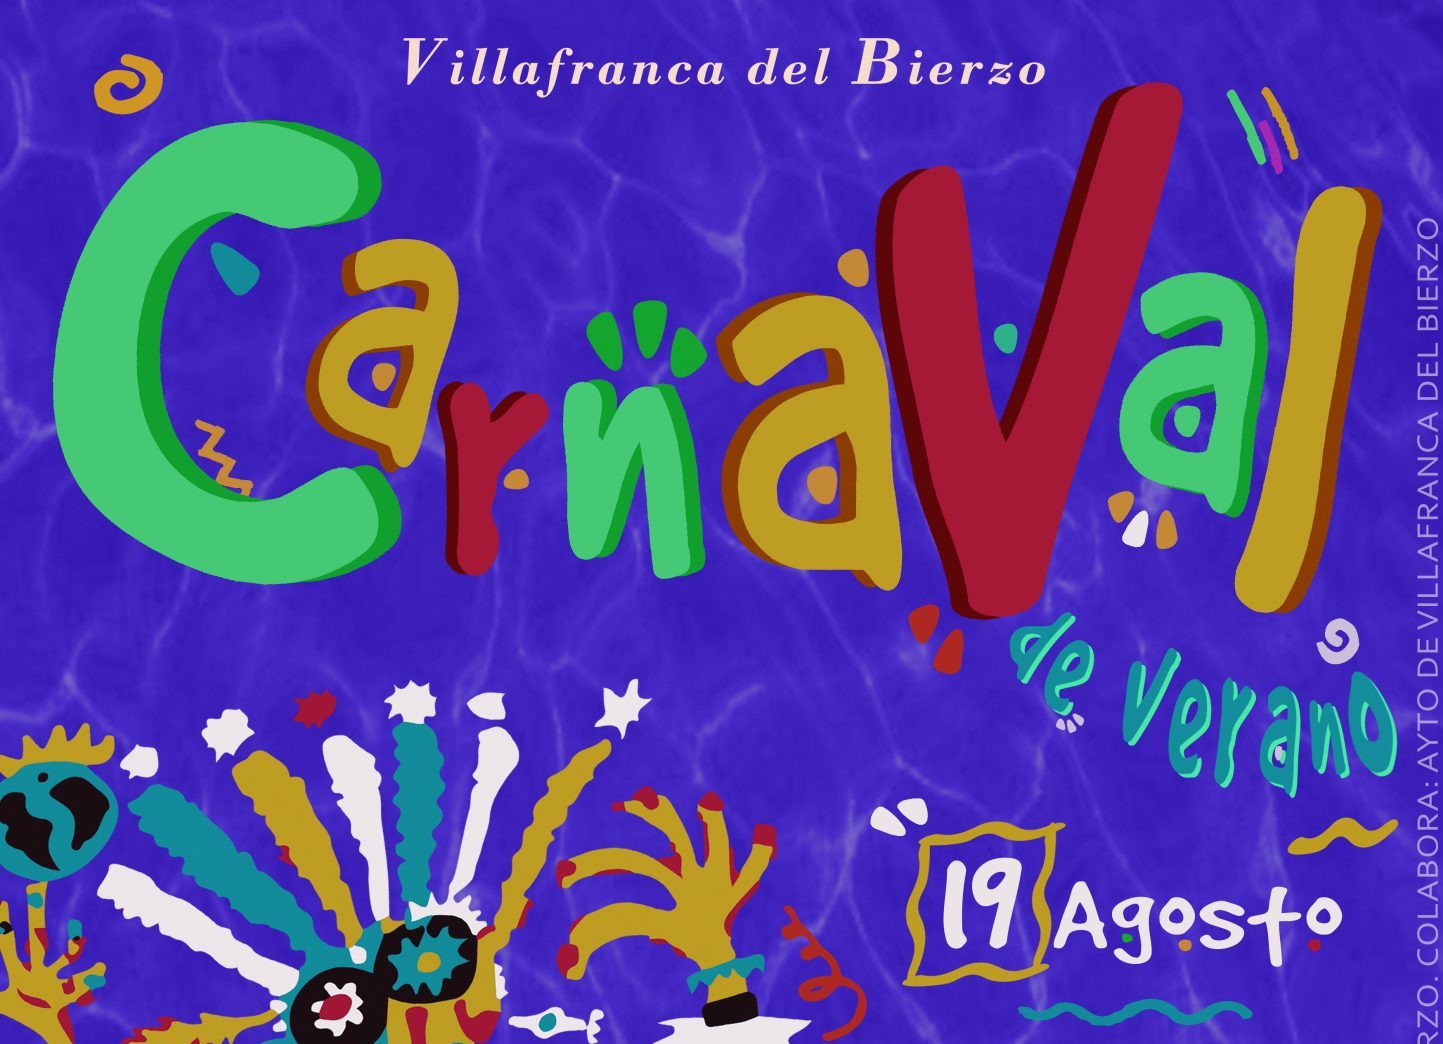 Villafranca celebrará su primer Carnaval de verano el próximo 19 de agosto 1